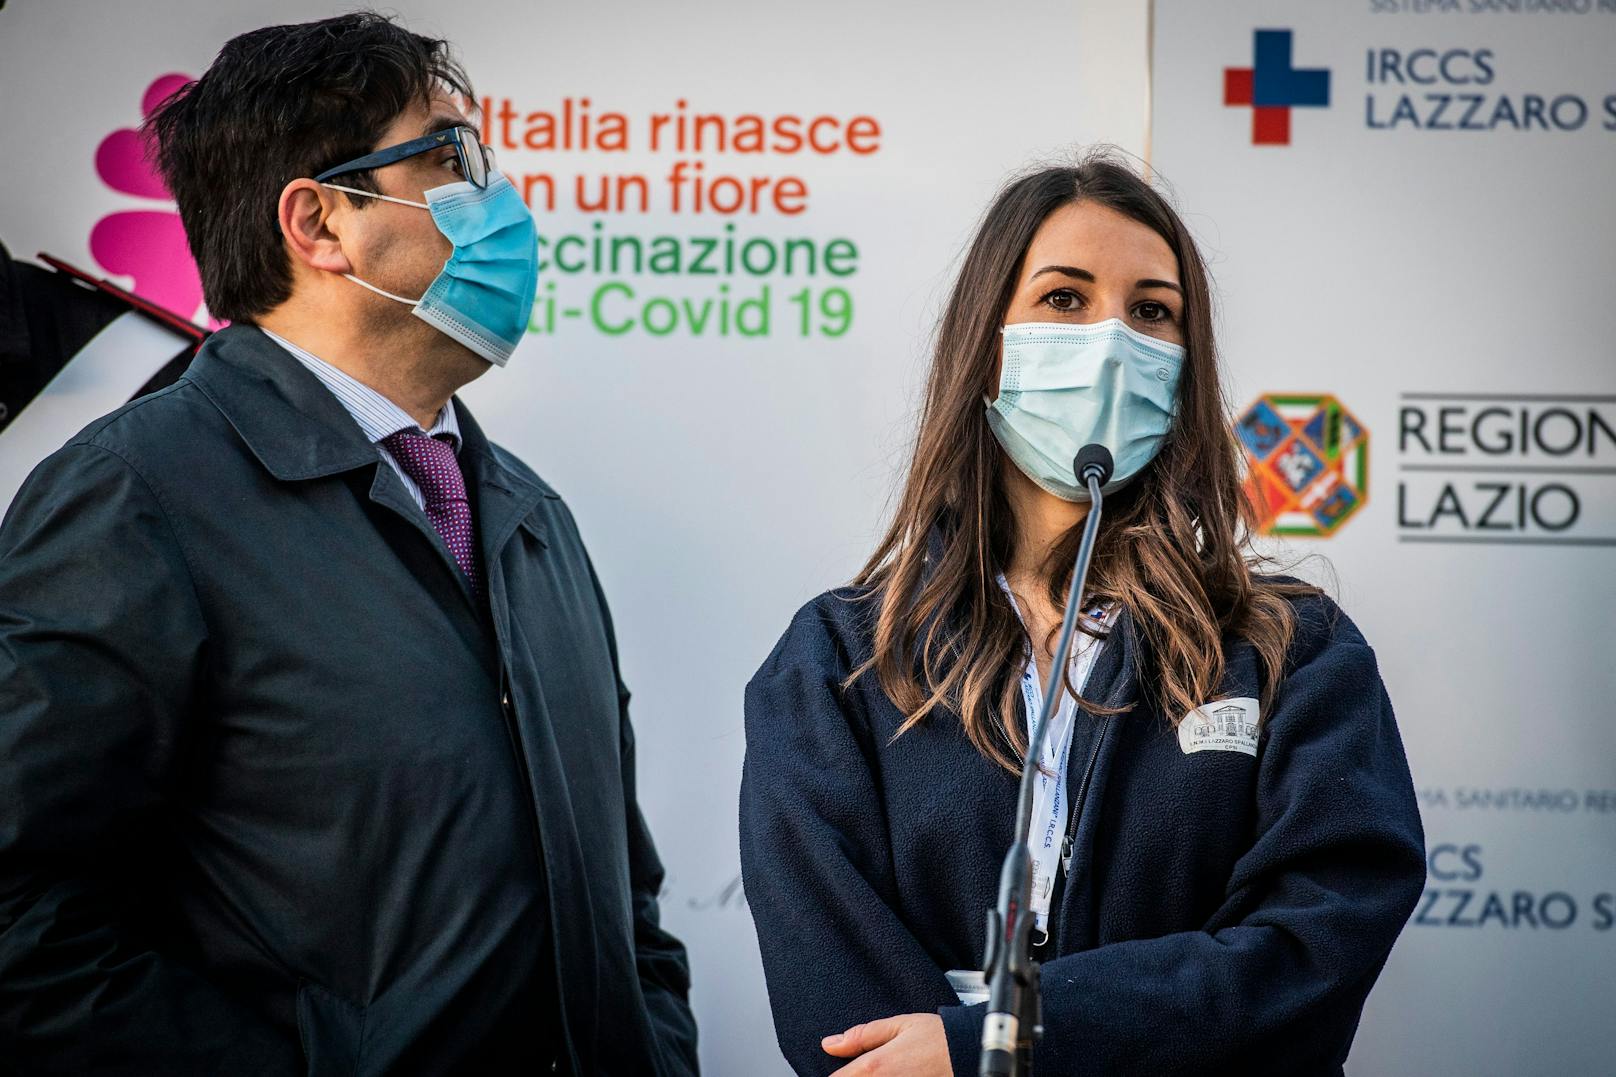 Die junge Italienern trat in Folge öffentlich für die Impfung und dafür, diese möglichst vielen Menschen zu verabreichen, ein.